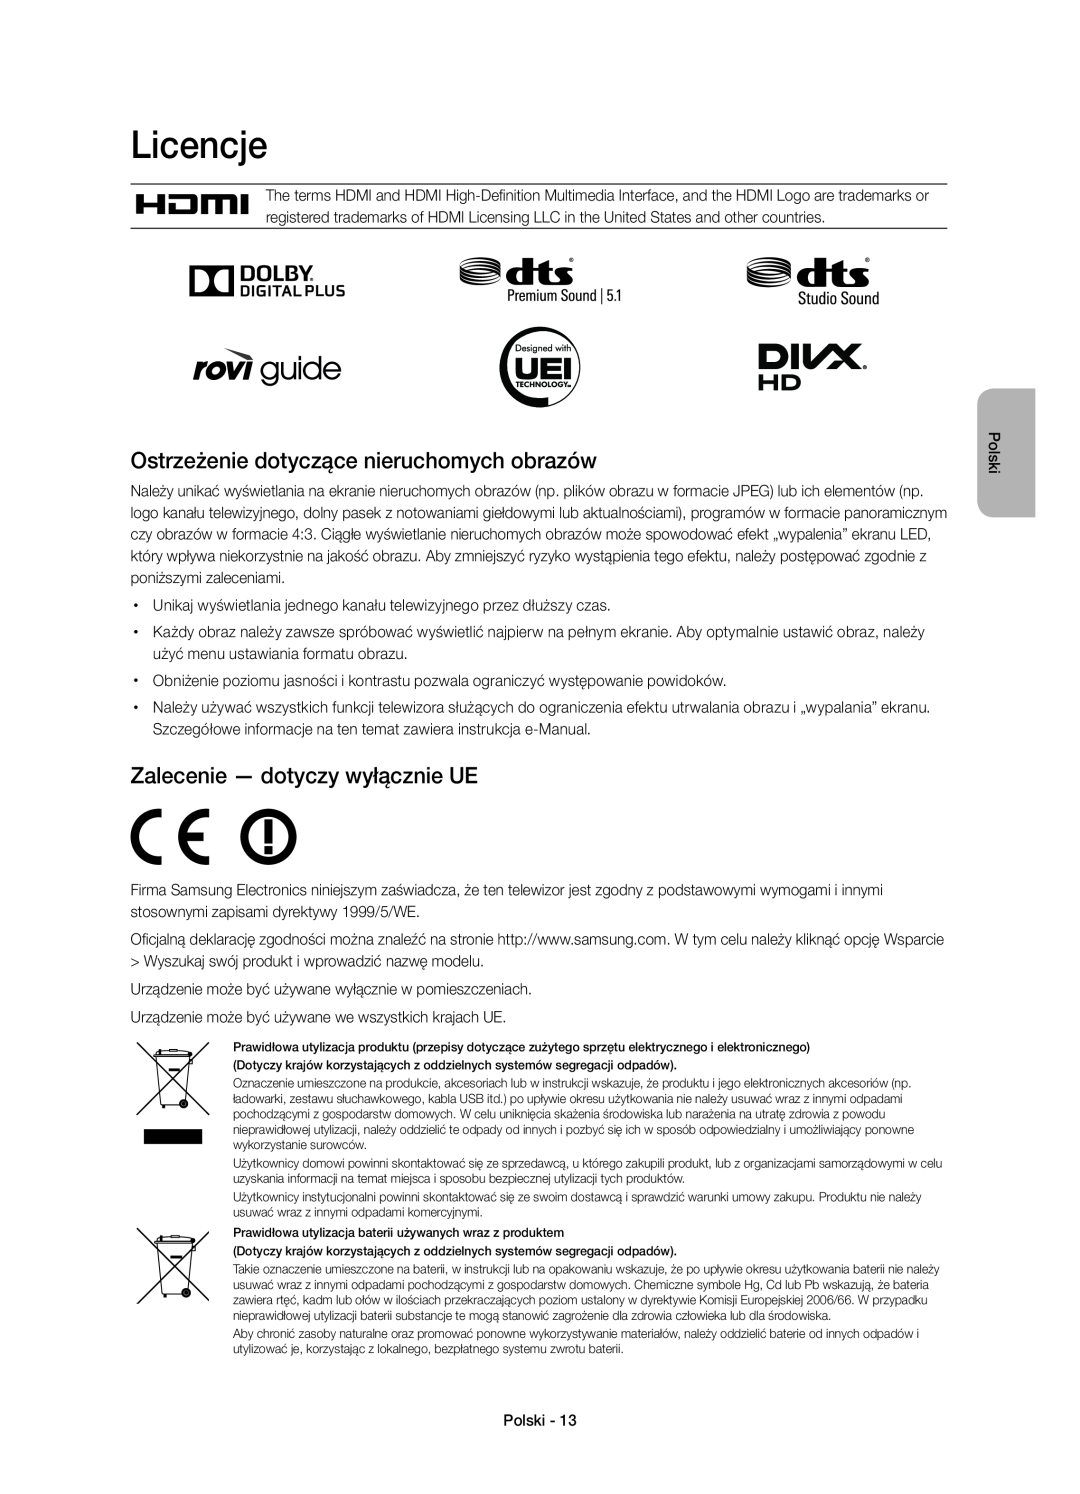 Samsung UE40H6410SSXZF Licencje, Ostrzeżenie dotyczące nieruchomych obrazów, Zalecenie - dotyczy wyłącznie UE, Polski 